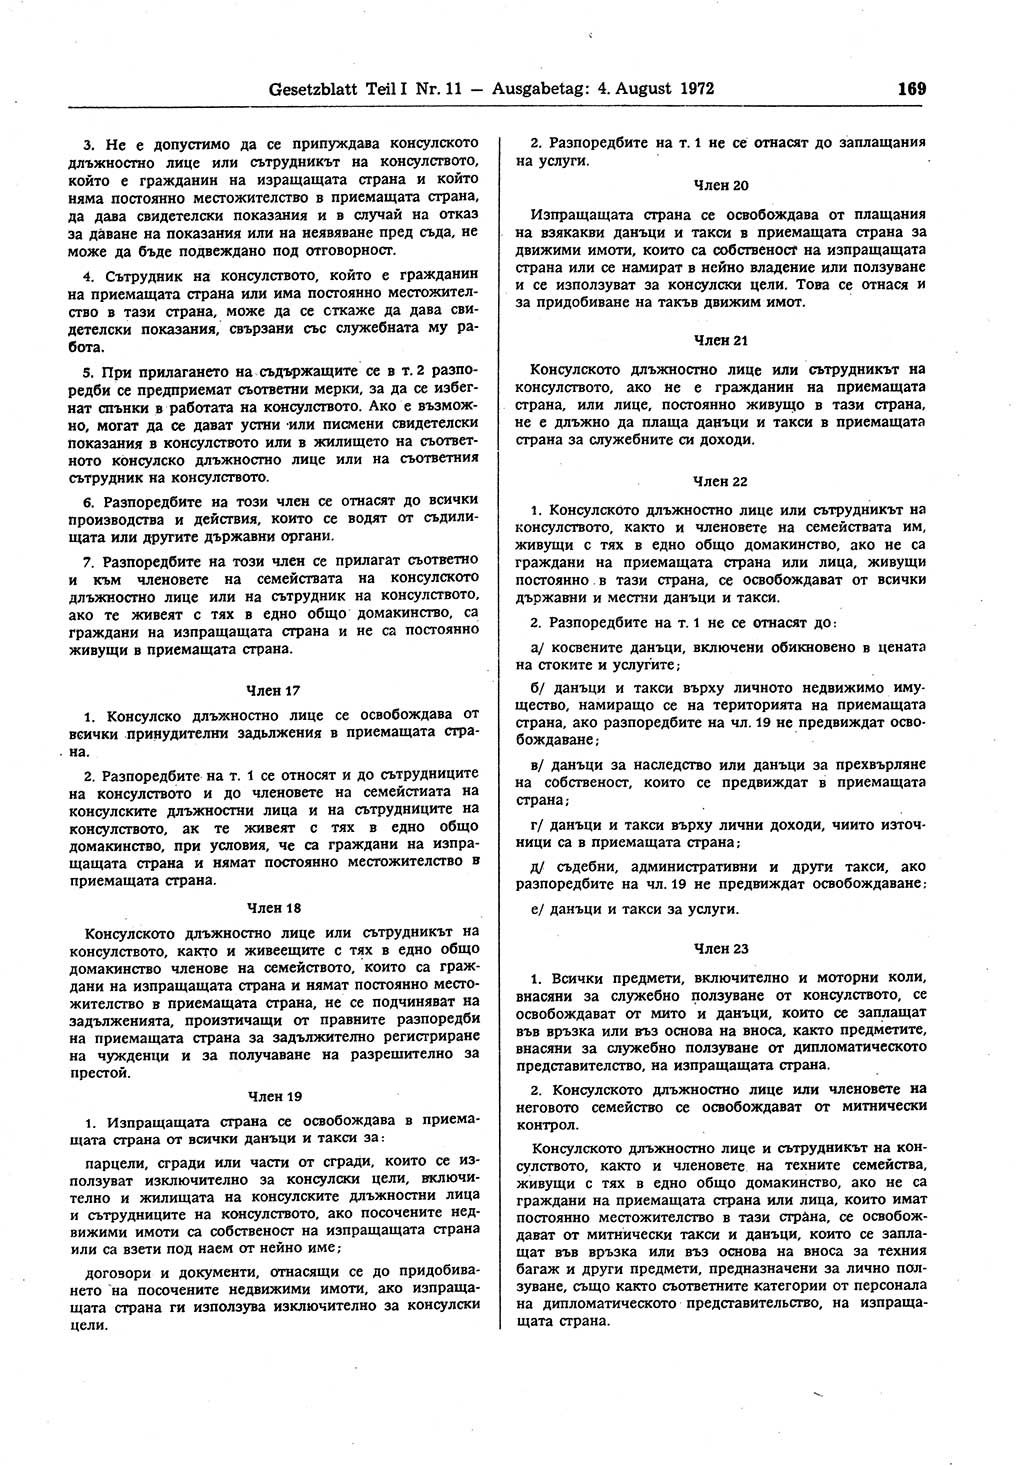 Gesetzblatt (GBl.) der Deutschen Demokratischen Republik (DDR) Teil Ⅰ 1972, Seite 169 (GBl. DDR Ⅰ 1972, S. 169)